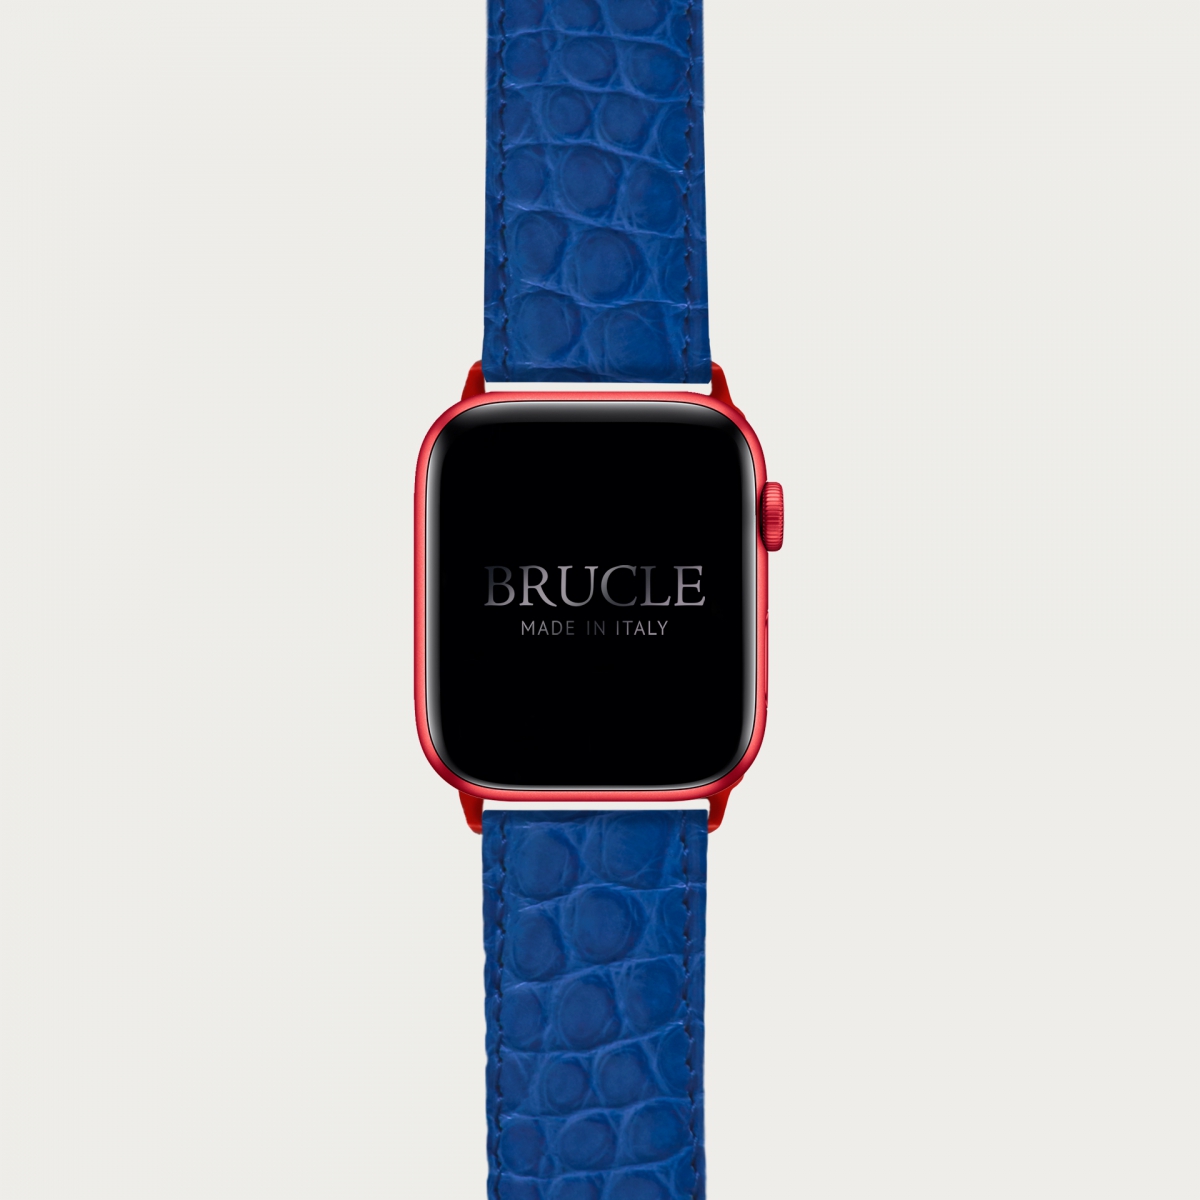 Alligator Armband kompatibel mit Apple Watch / Samsung Smartwatch, Blau